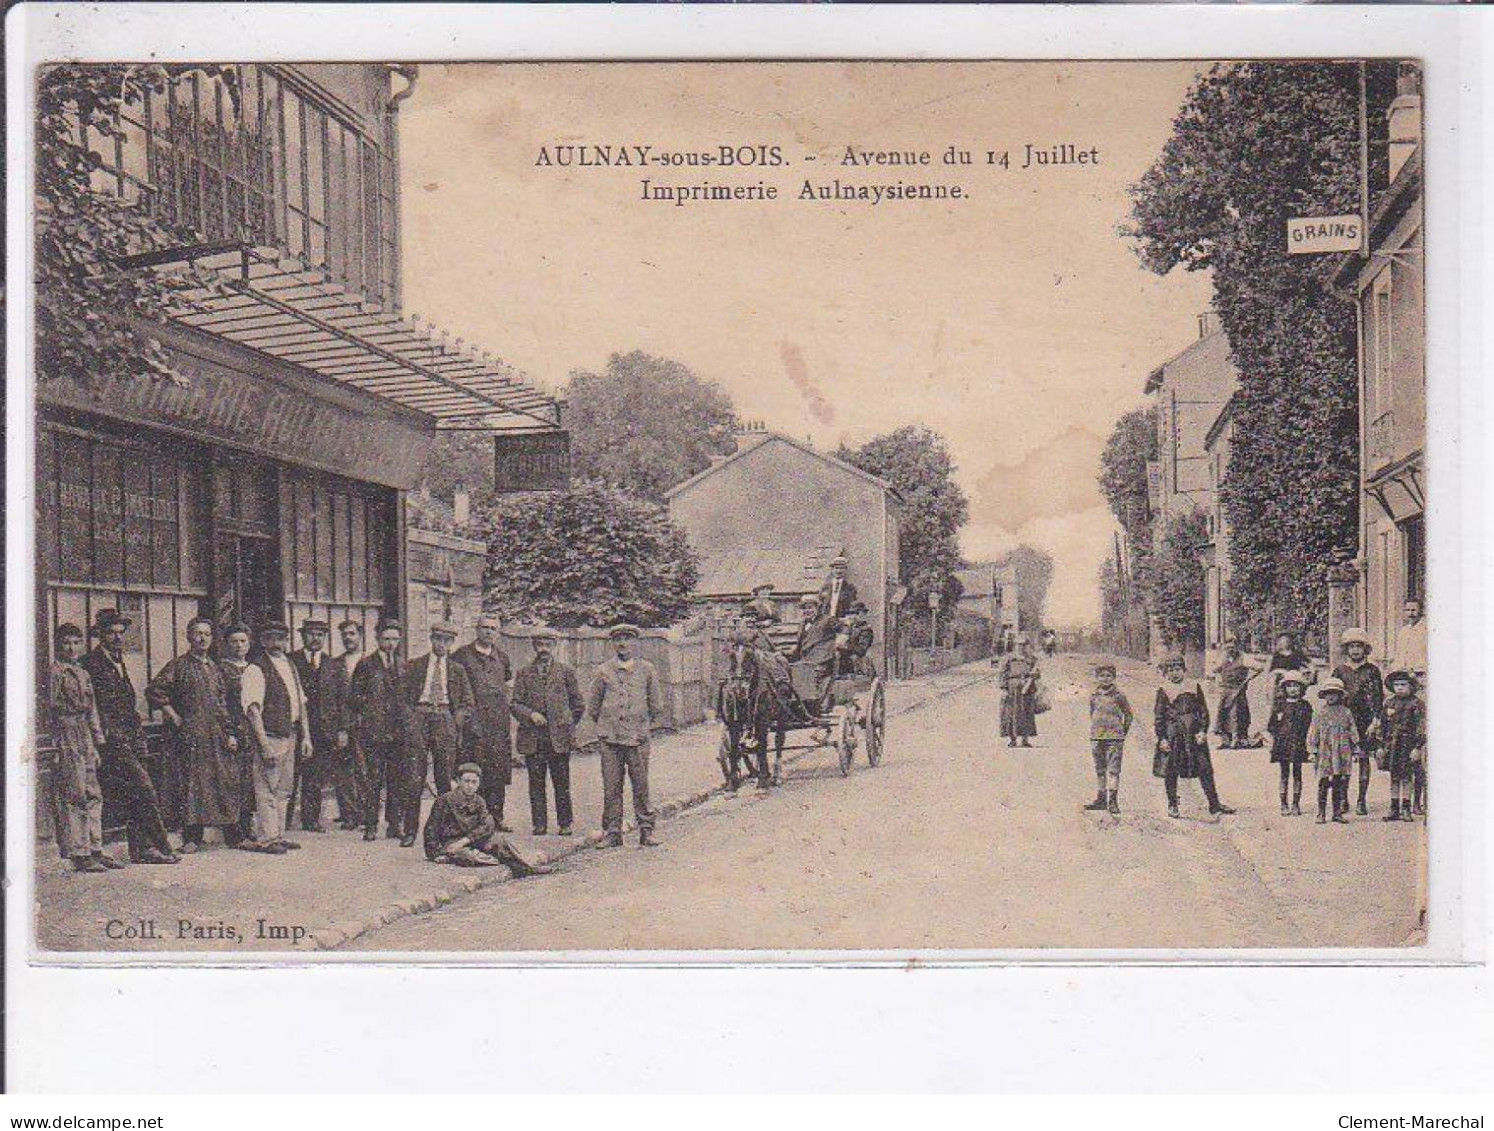 AULNAY-sous-BOIS: Avenue Du 14 Juillet, Imprimerie Aulnaysienne - état - Aulnay Sous Bois